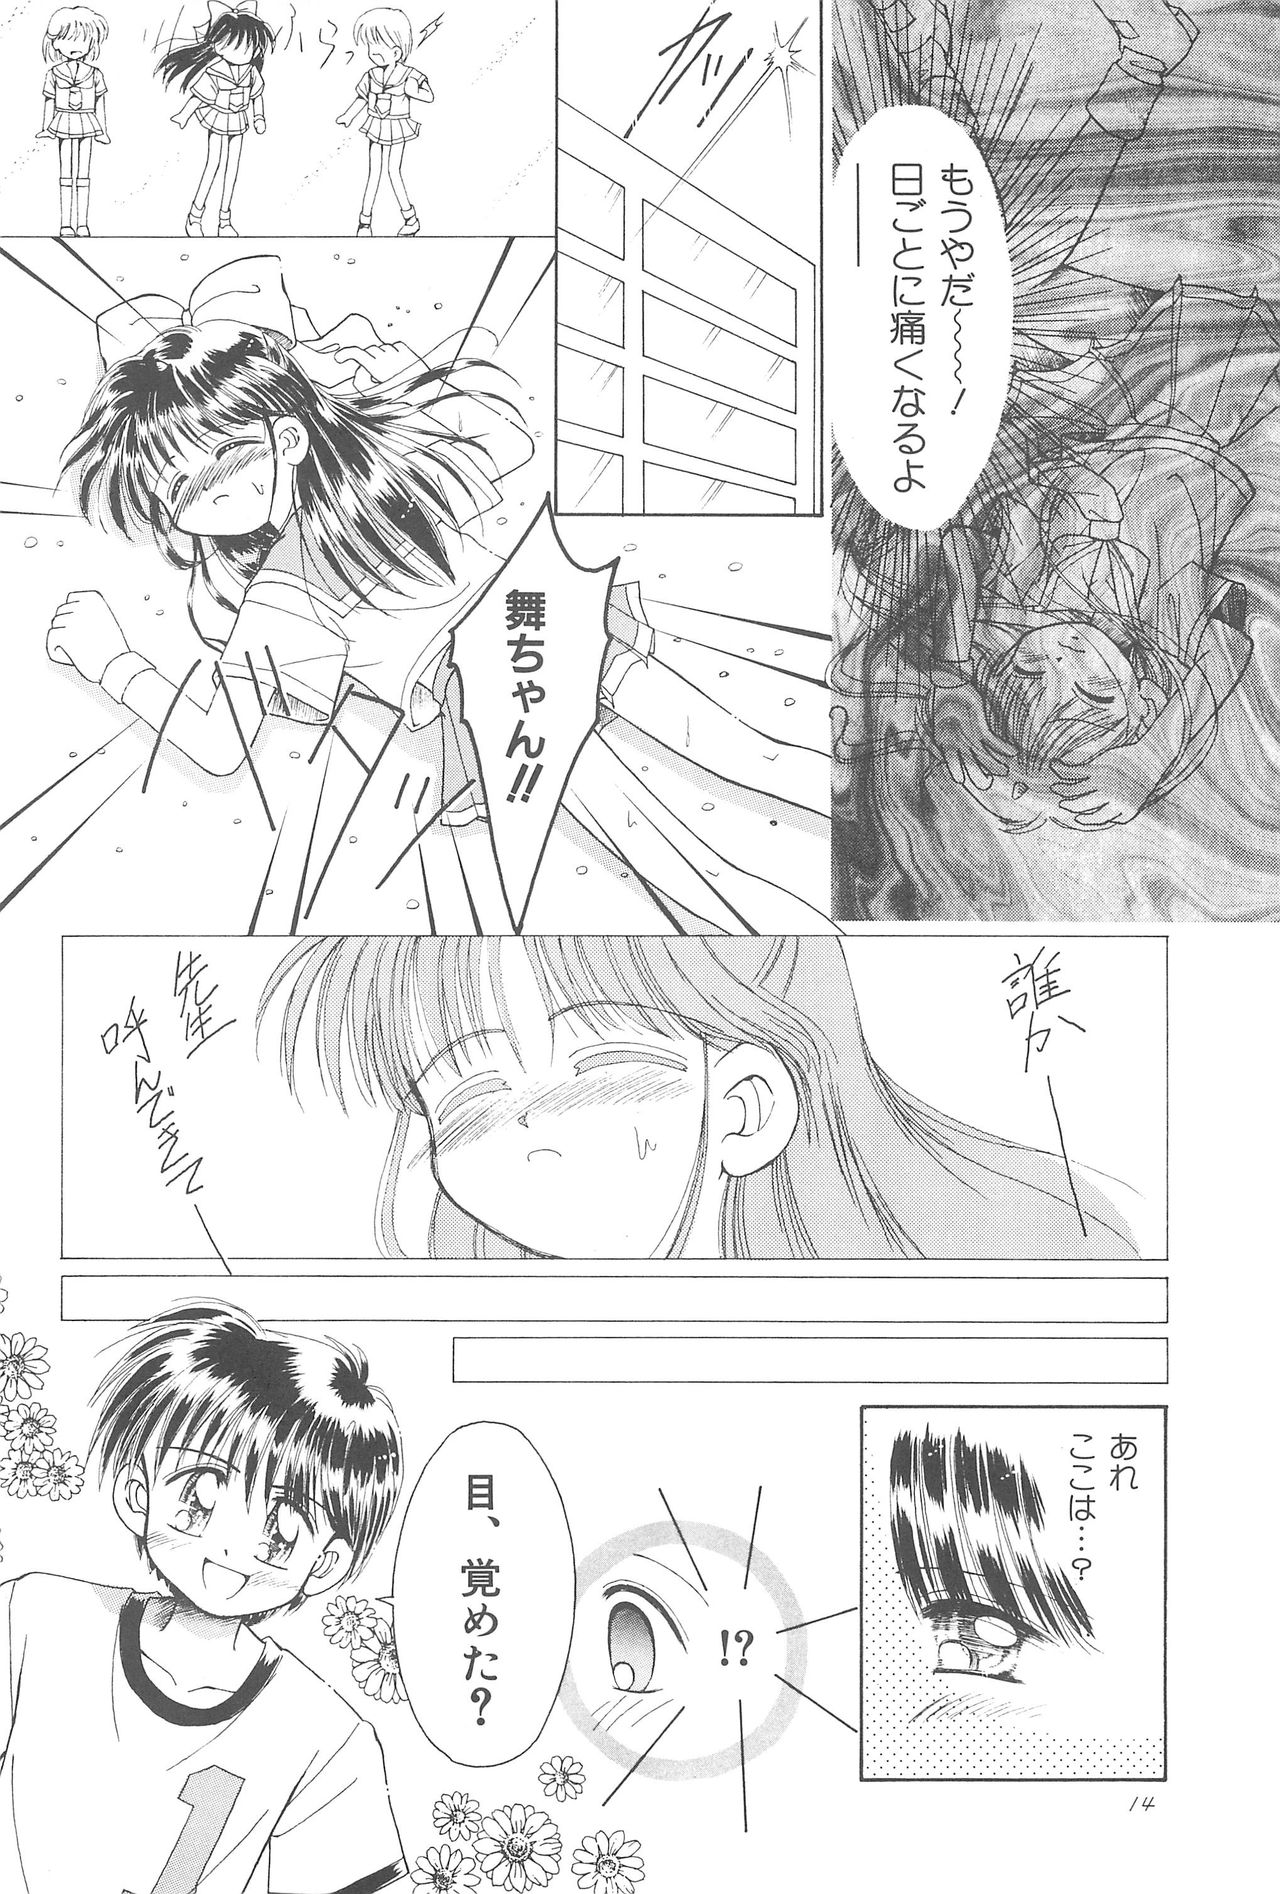 (CR23) [PHOENIX PROJECT (Kamikaze Makoto)] Okosama Lunch Original 1 page 16 full